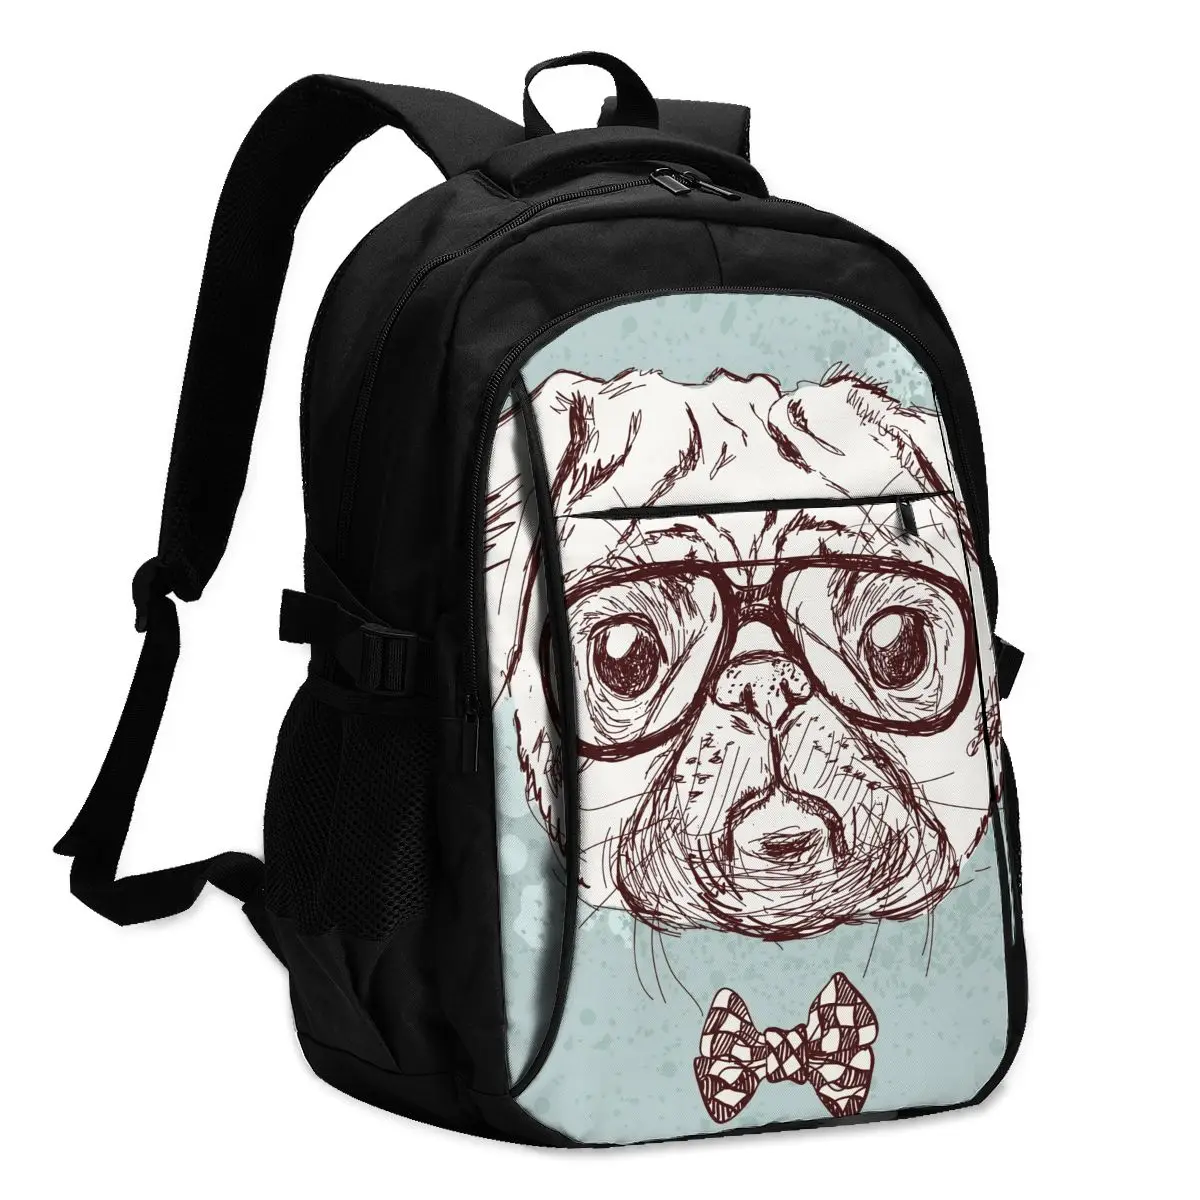 

2021 Прохладный печати ноутбук рюкзак Винтаж Hipster Мопс собачьи очки Лук зарядка через USB путешествия Для женщин Мужской школьная сумка Mochila